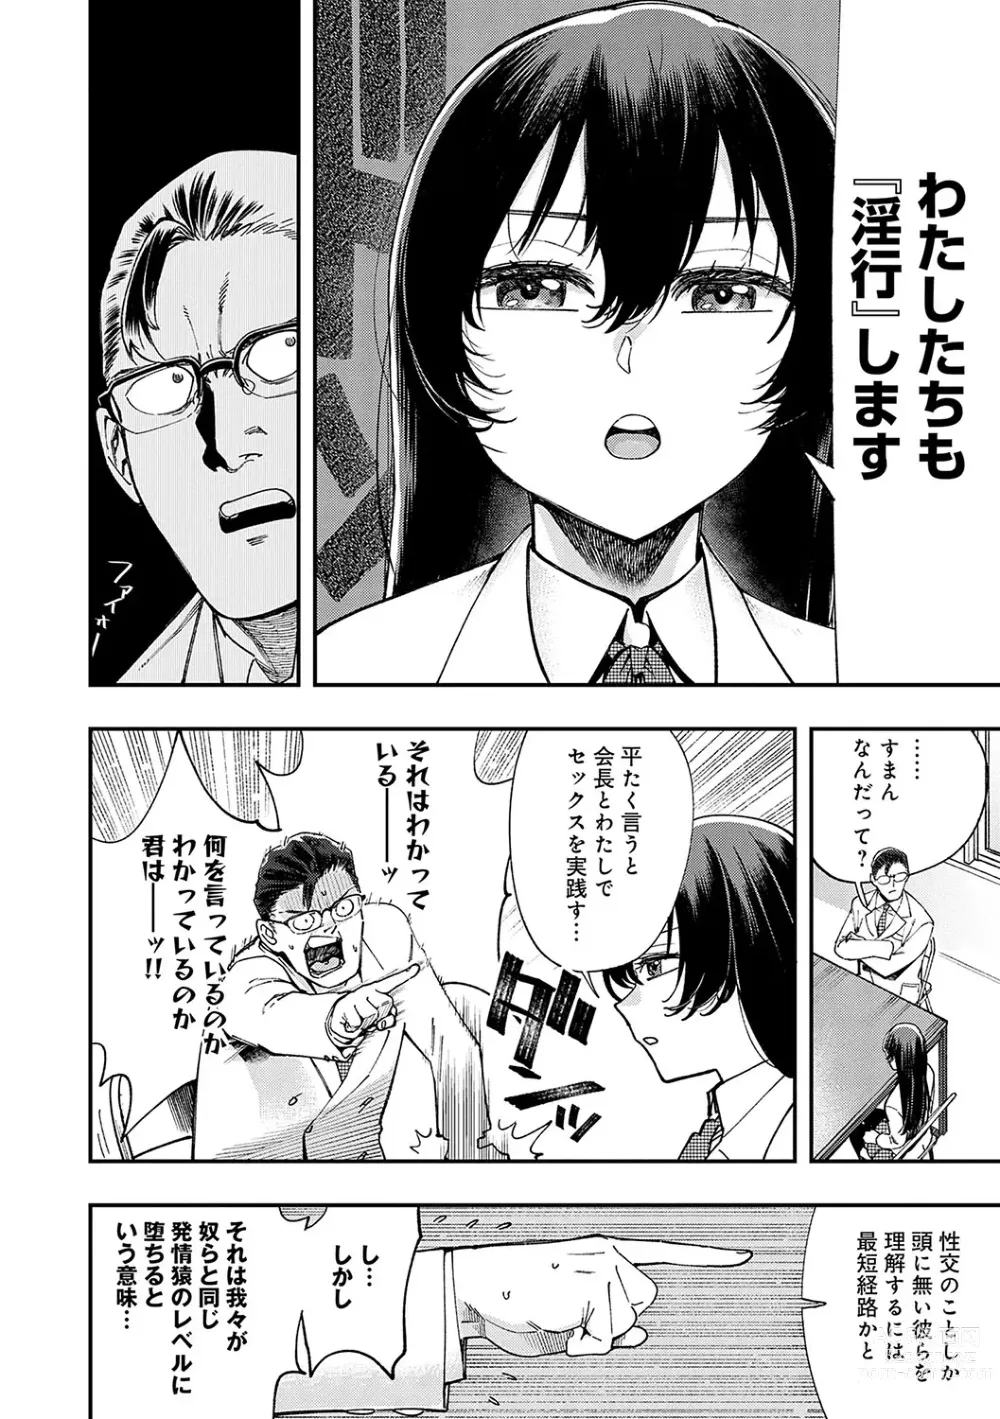 Page 11 of manga Kashikoi Oppai